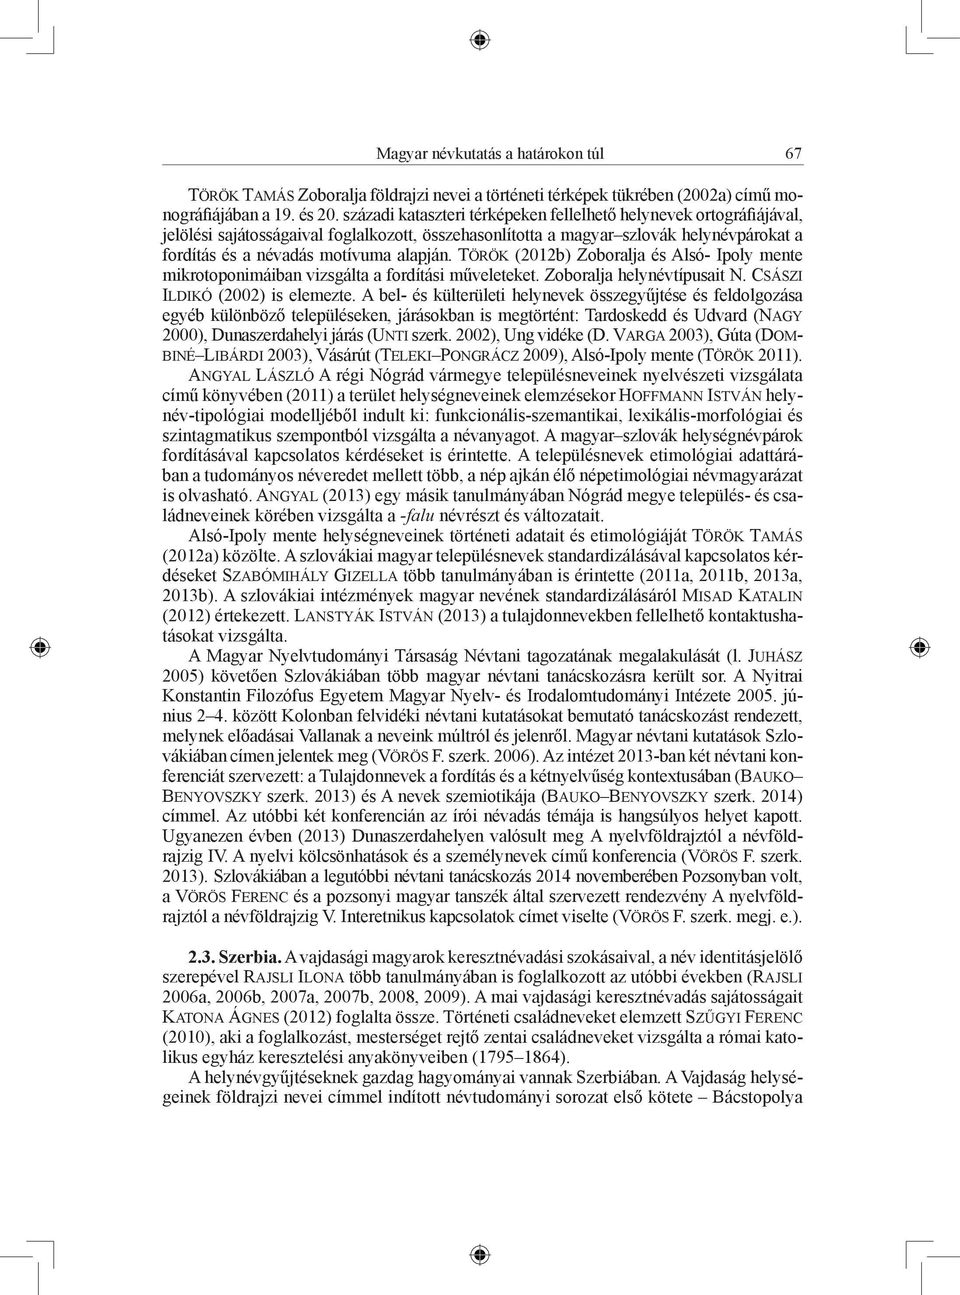 Török (2012b) Zoboralja és Alsó- Ipoly mente mikrotoponimáiban vizsgálta a fordítási műveleteket. Zoboralja helynévtípusait N. Császi Ildikó (2002) is elemezte.